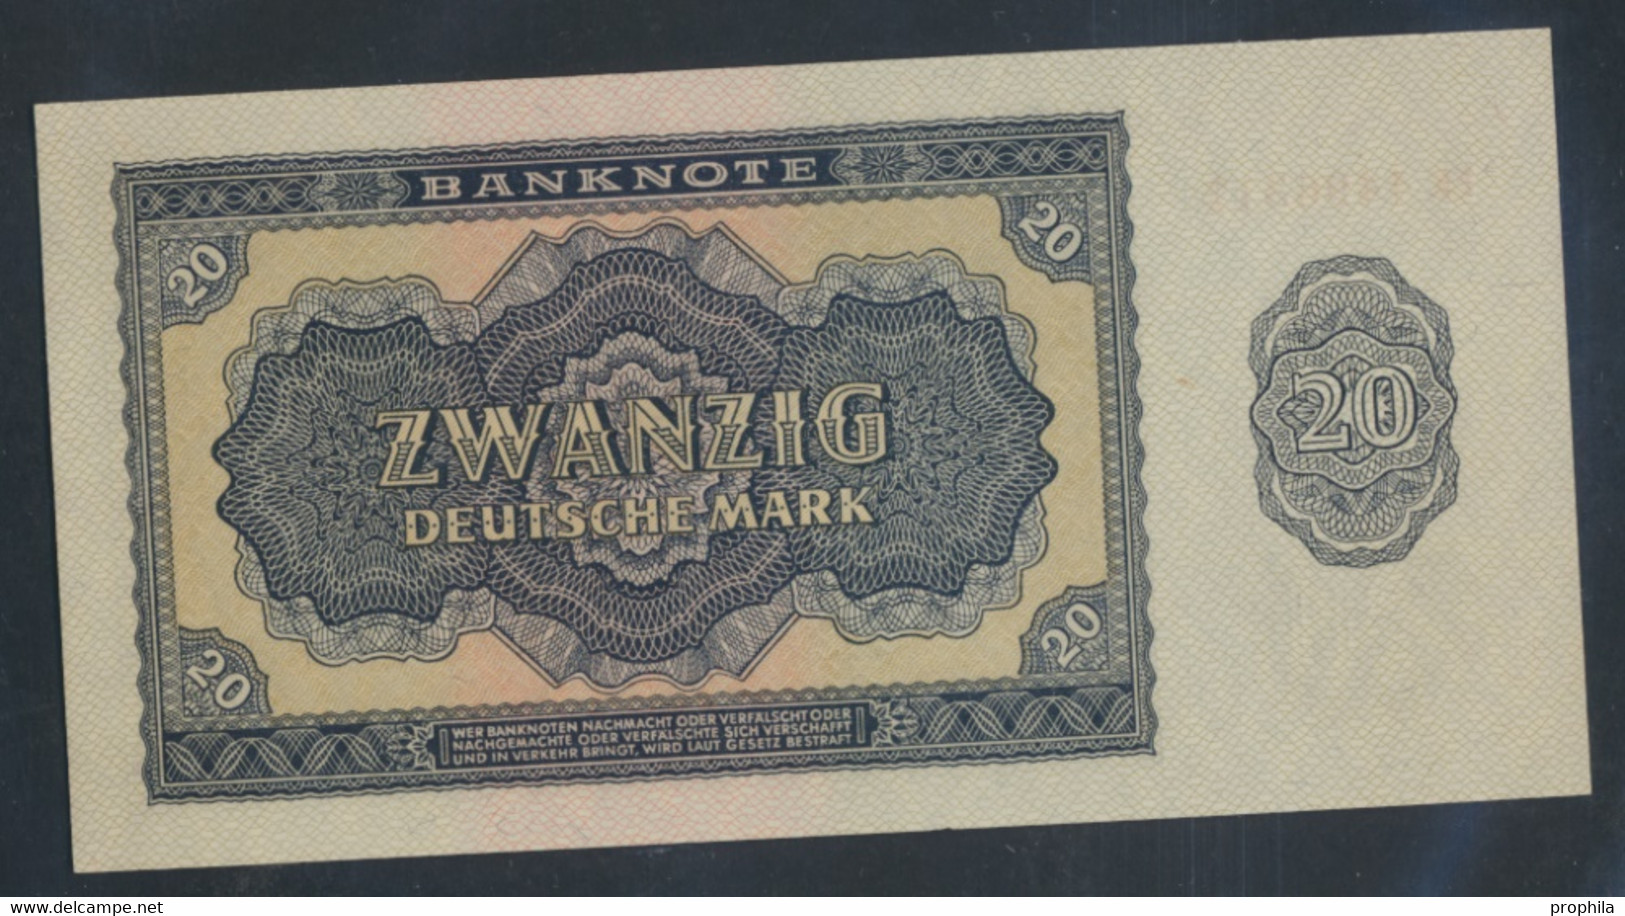 DDR Rosenbg: 351a, KN 7stellig, Davor Zwei Buchstaben Bankfrisch 1955 20 Deutsche Mark (9810595 - 20 Deutsche Mark